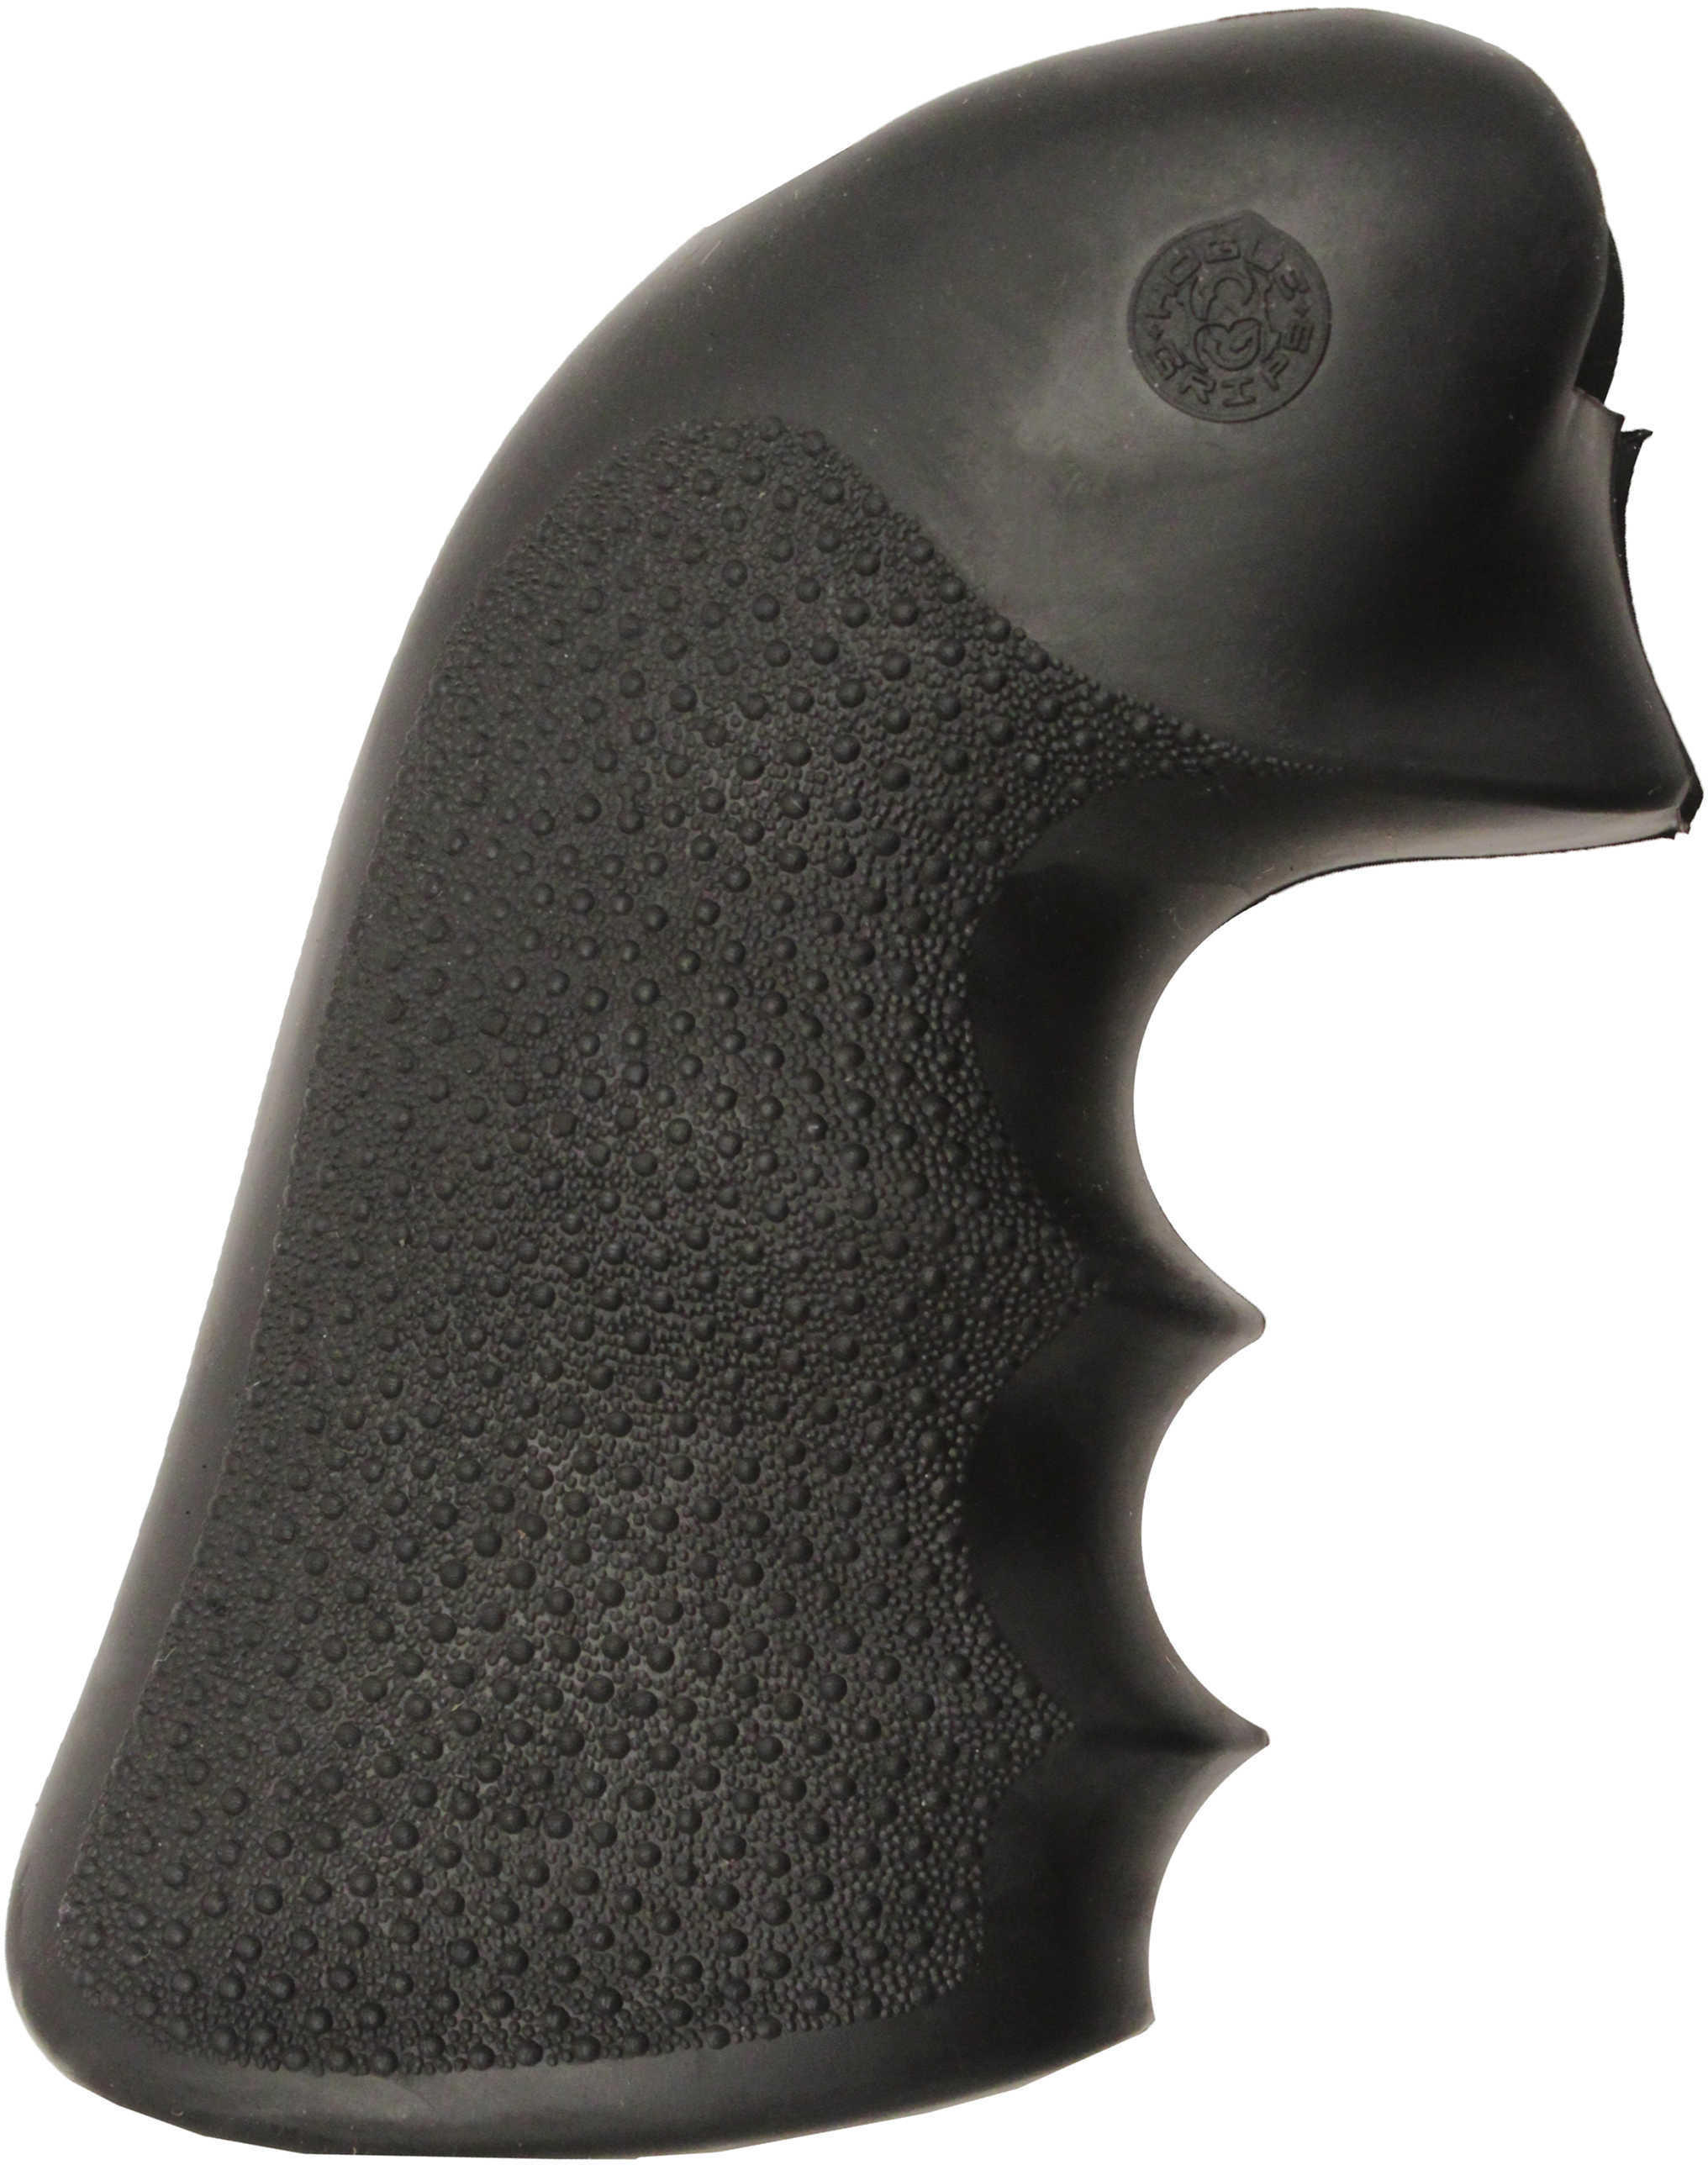 Hogue Grips Ruger® Super BLACKHW Sq Trigger Guard